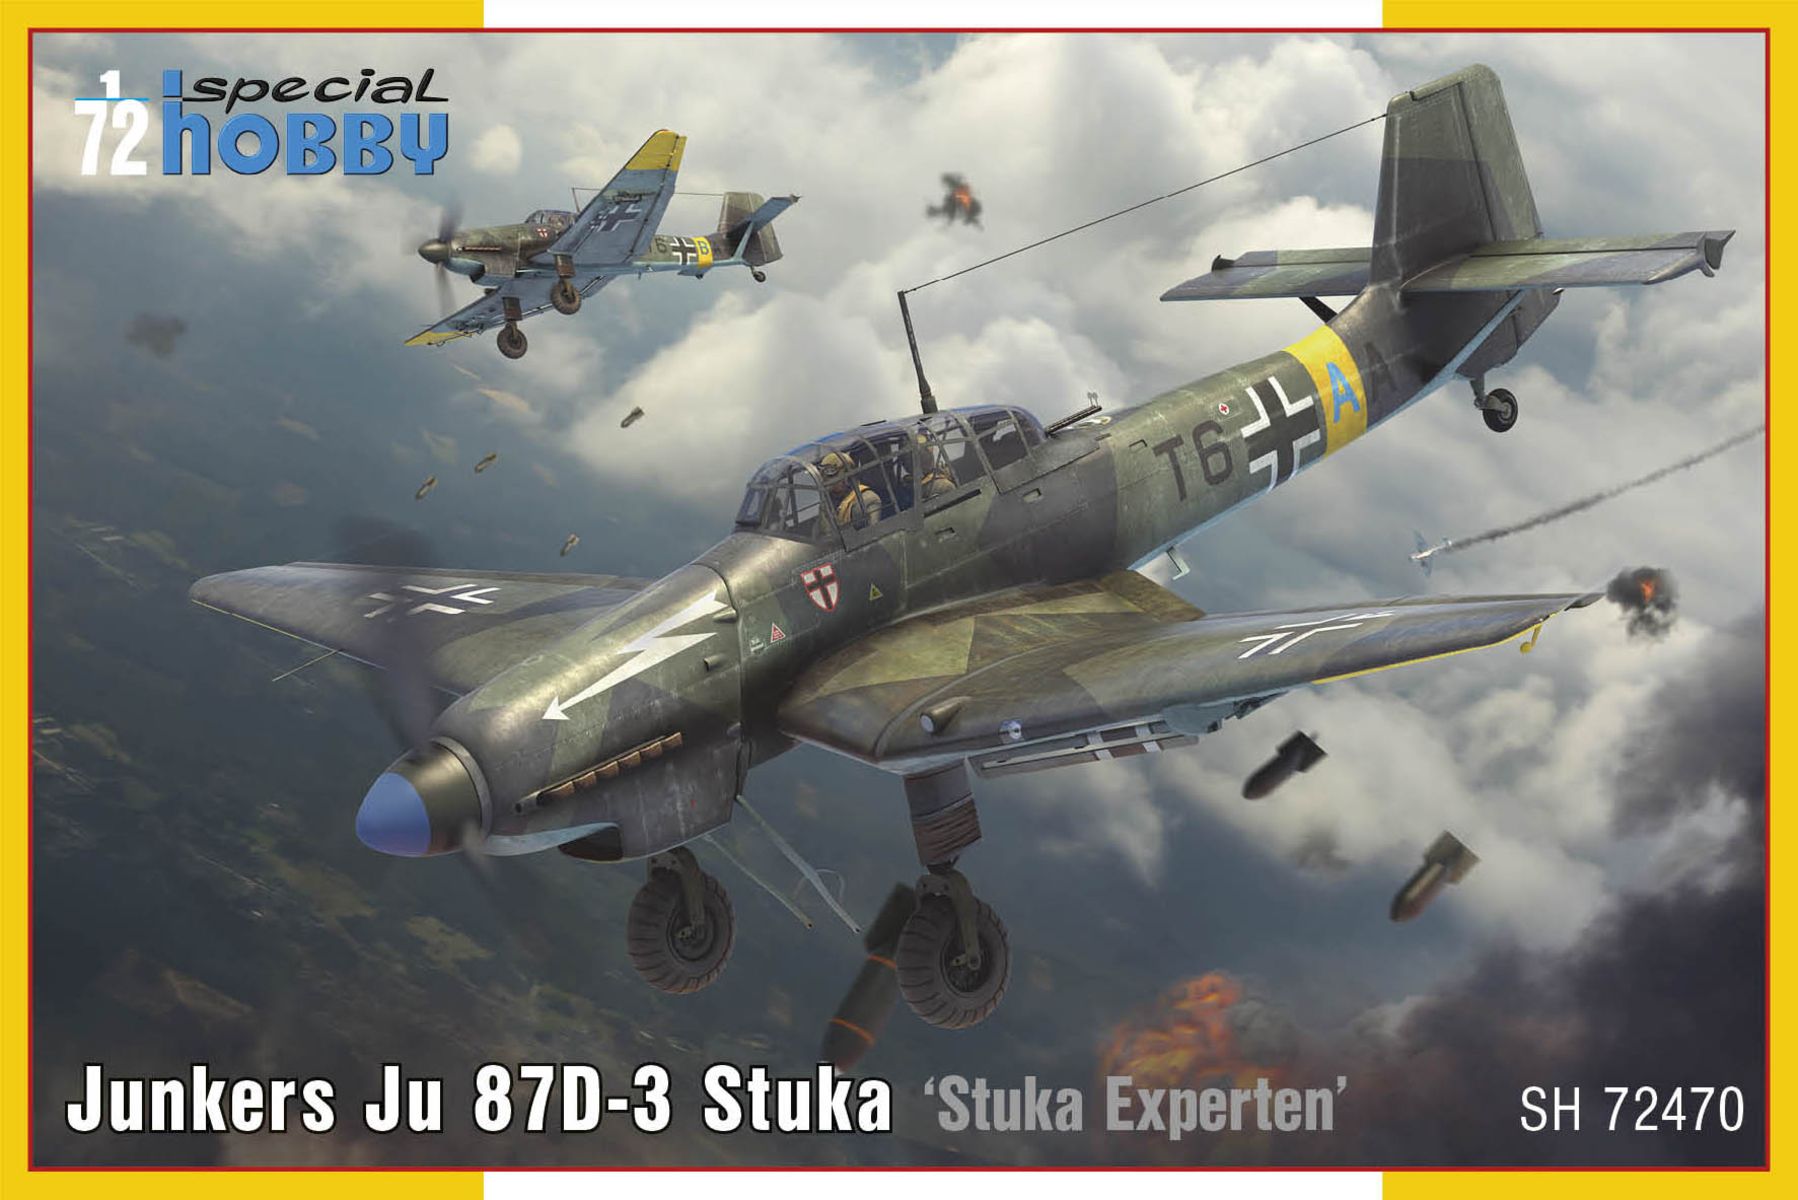 1/72 Junkers Ju 87D-3 Stuka ‘Stuka Experten’